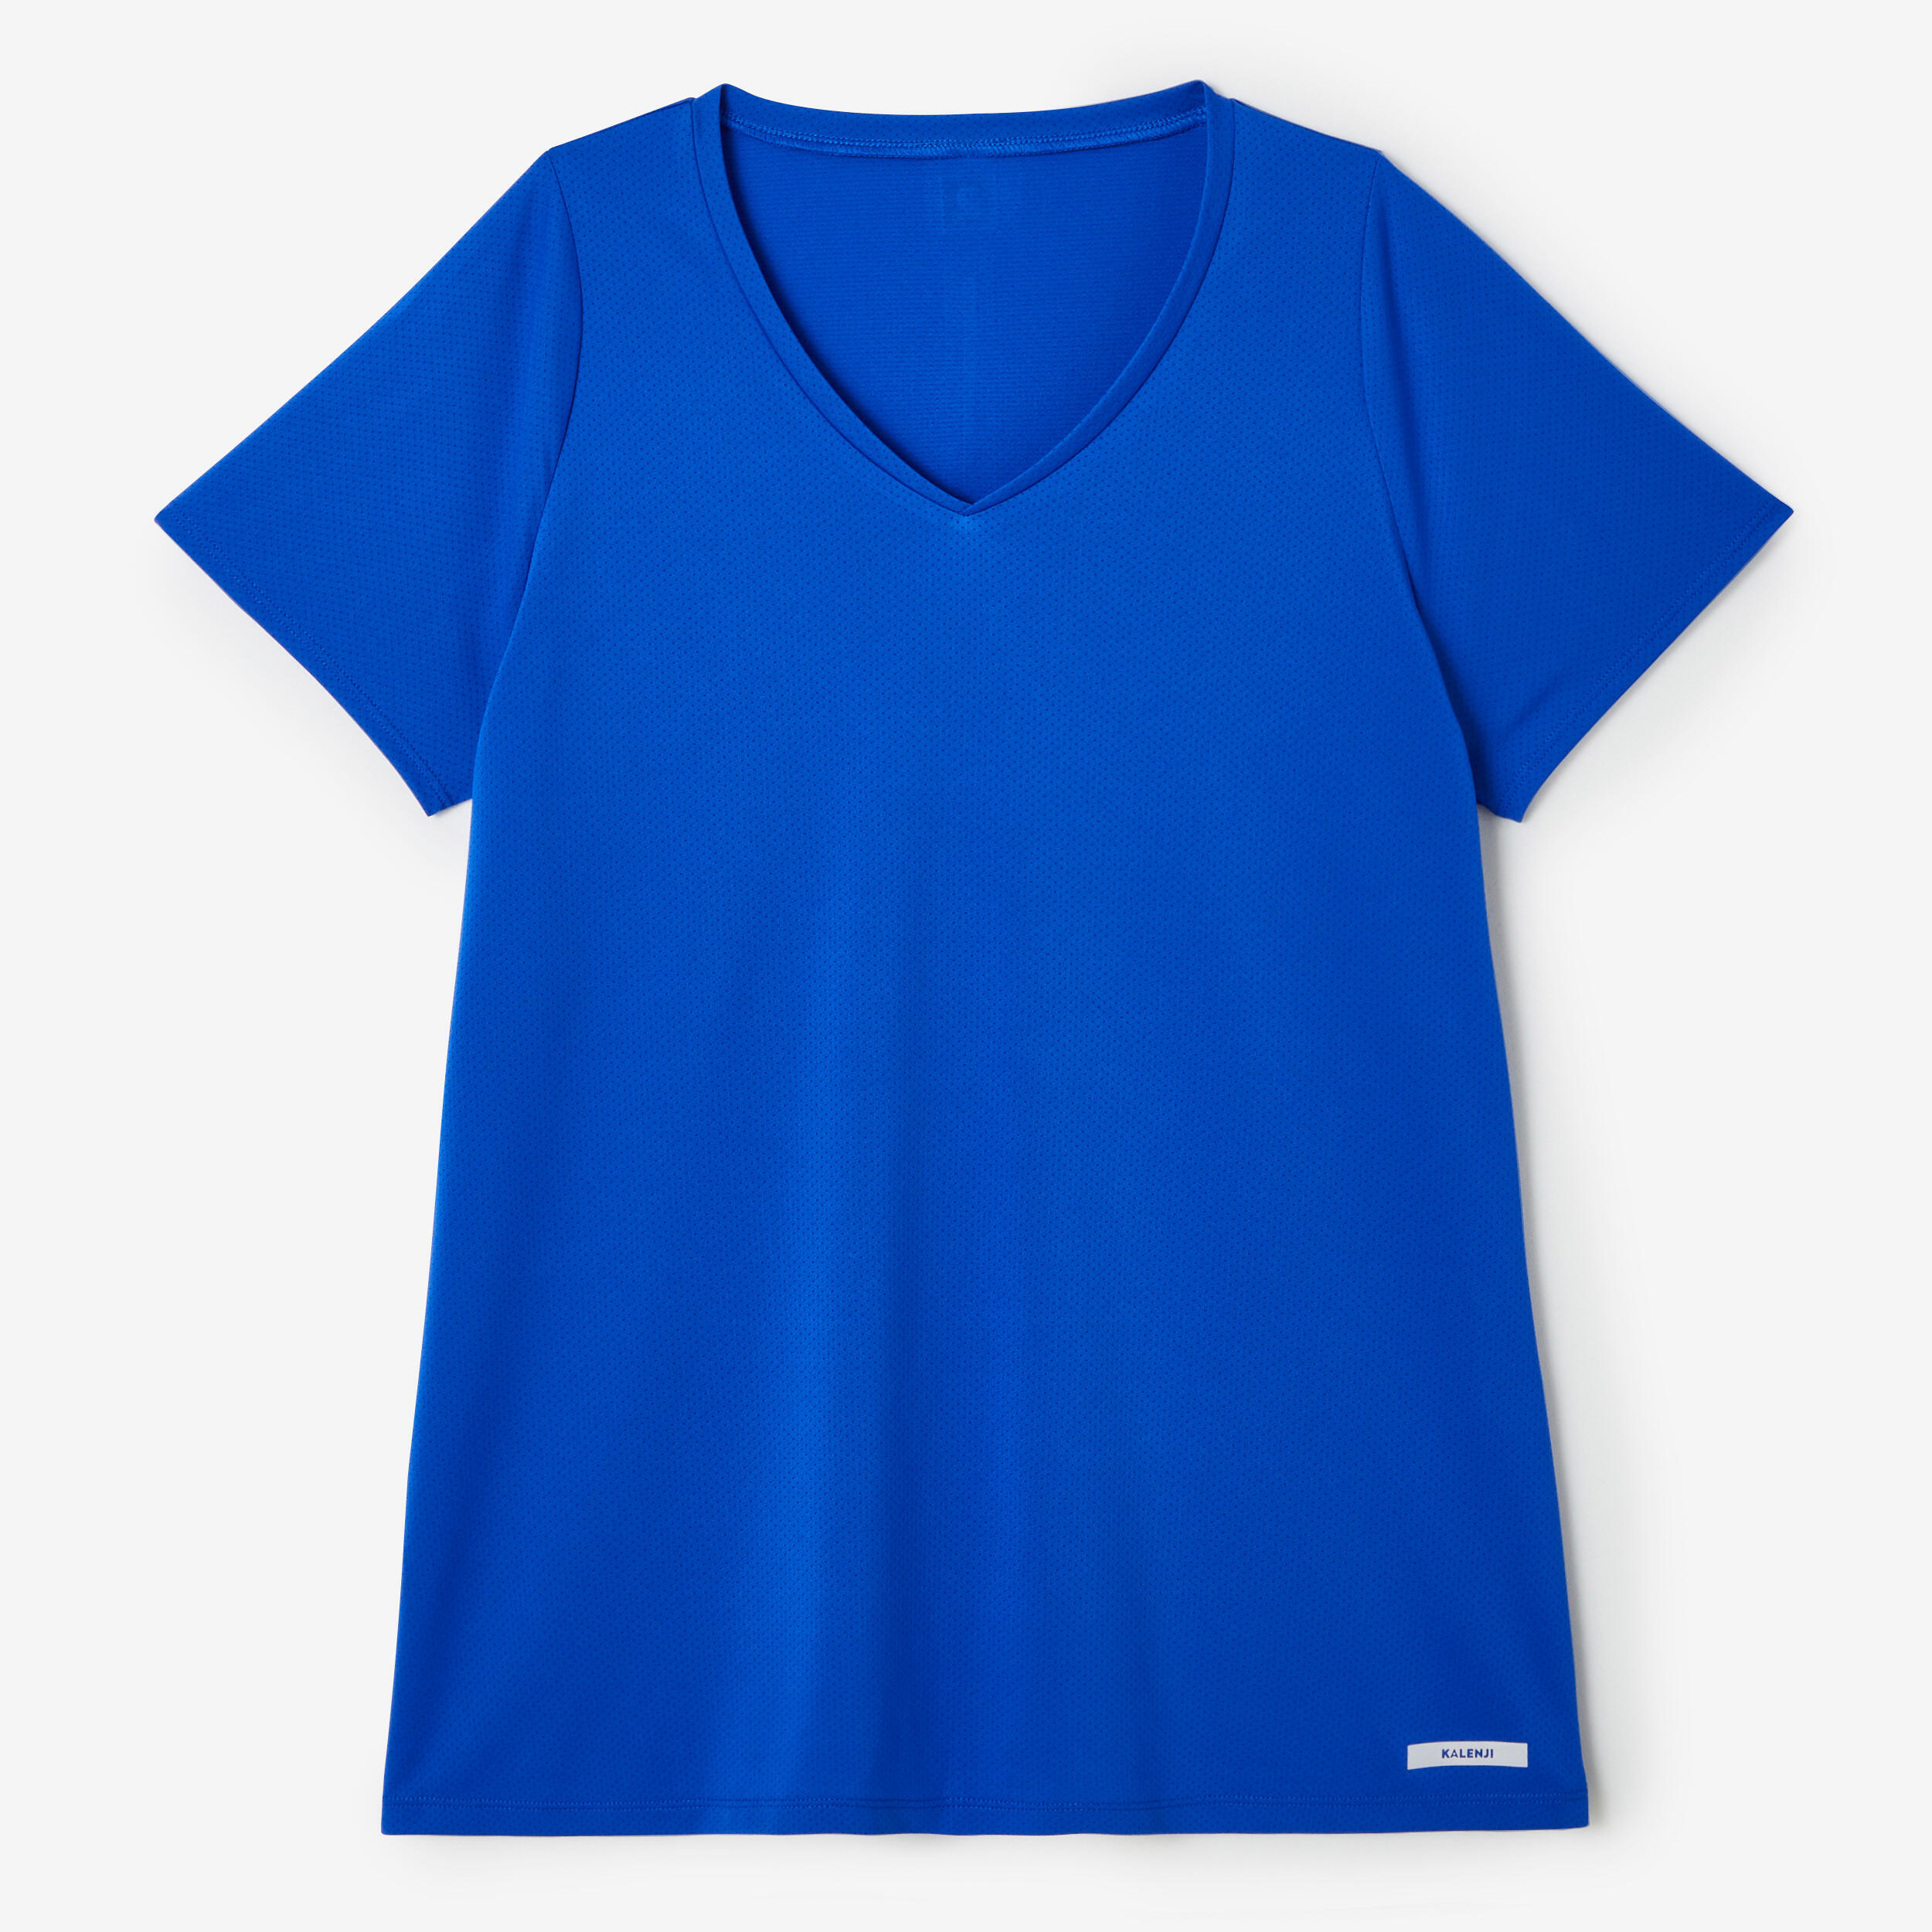 Women's short-sleeved breathable running T-shirt Dry - blue 7/7